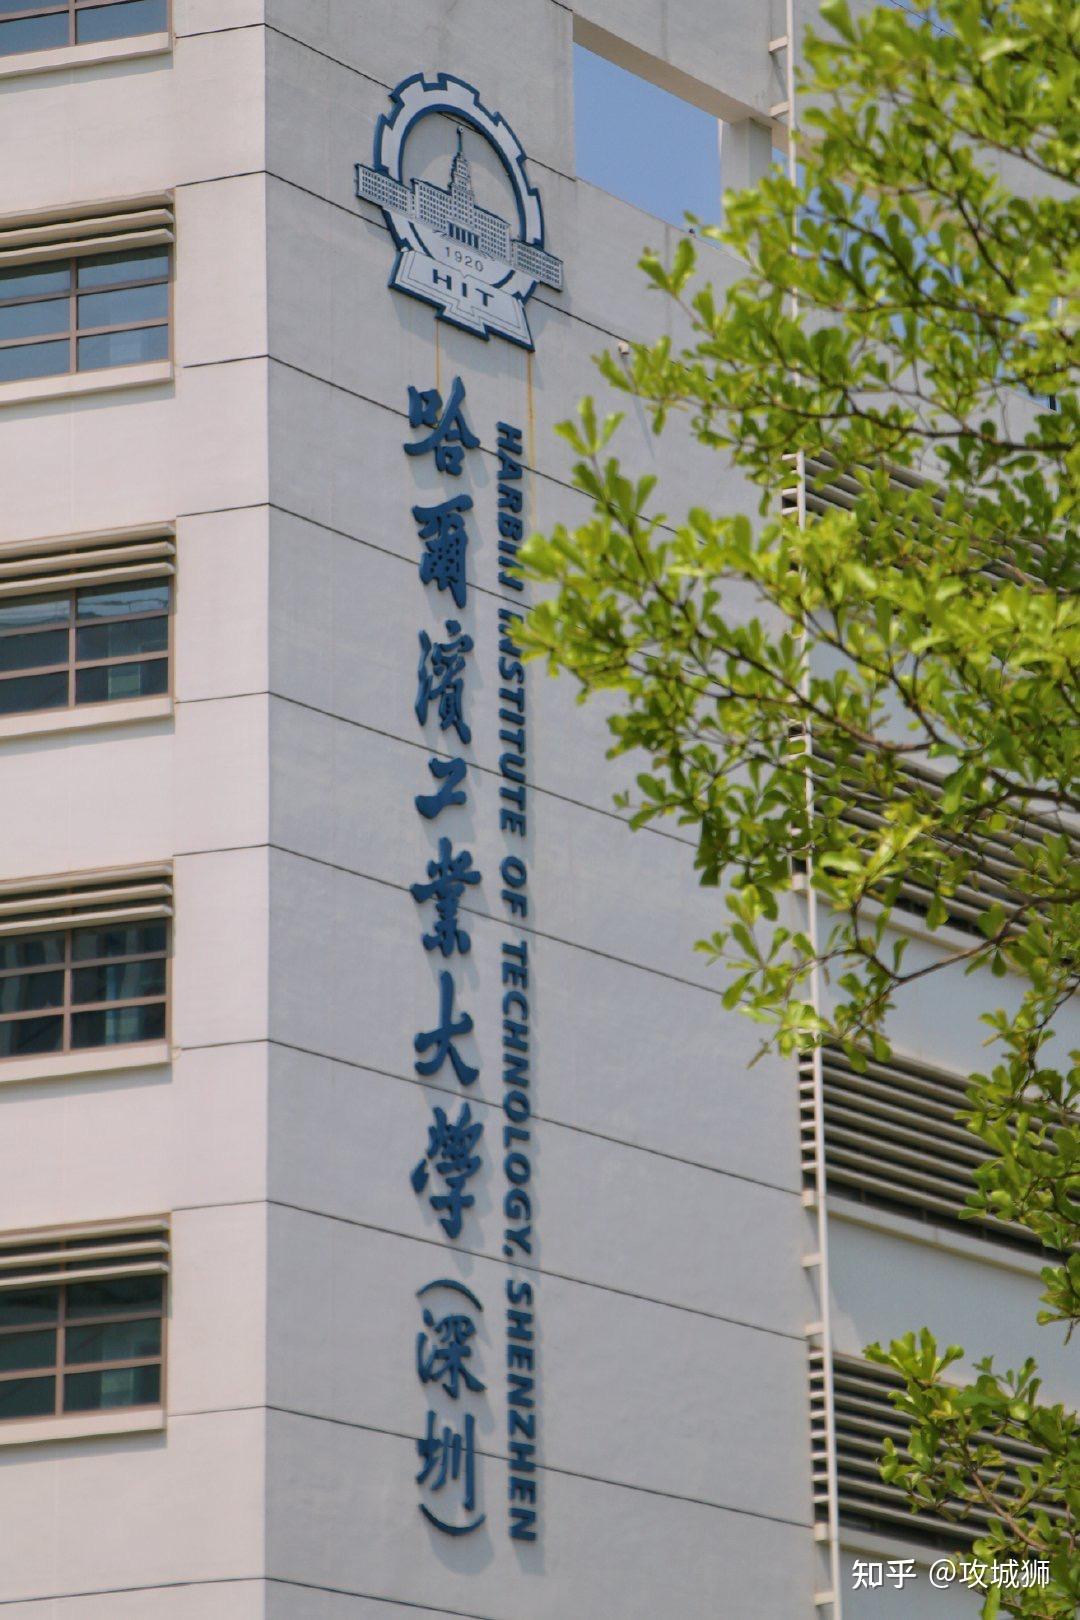 三校合体处深圳大学城由清华北大哈工大组成的,三个学校公用图书馆